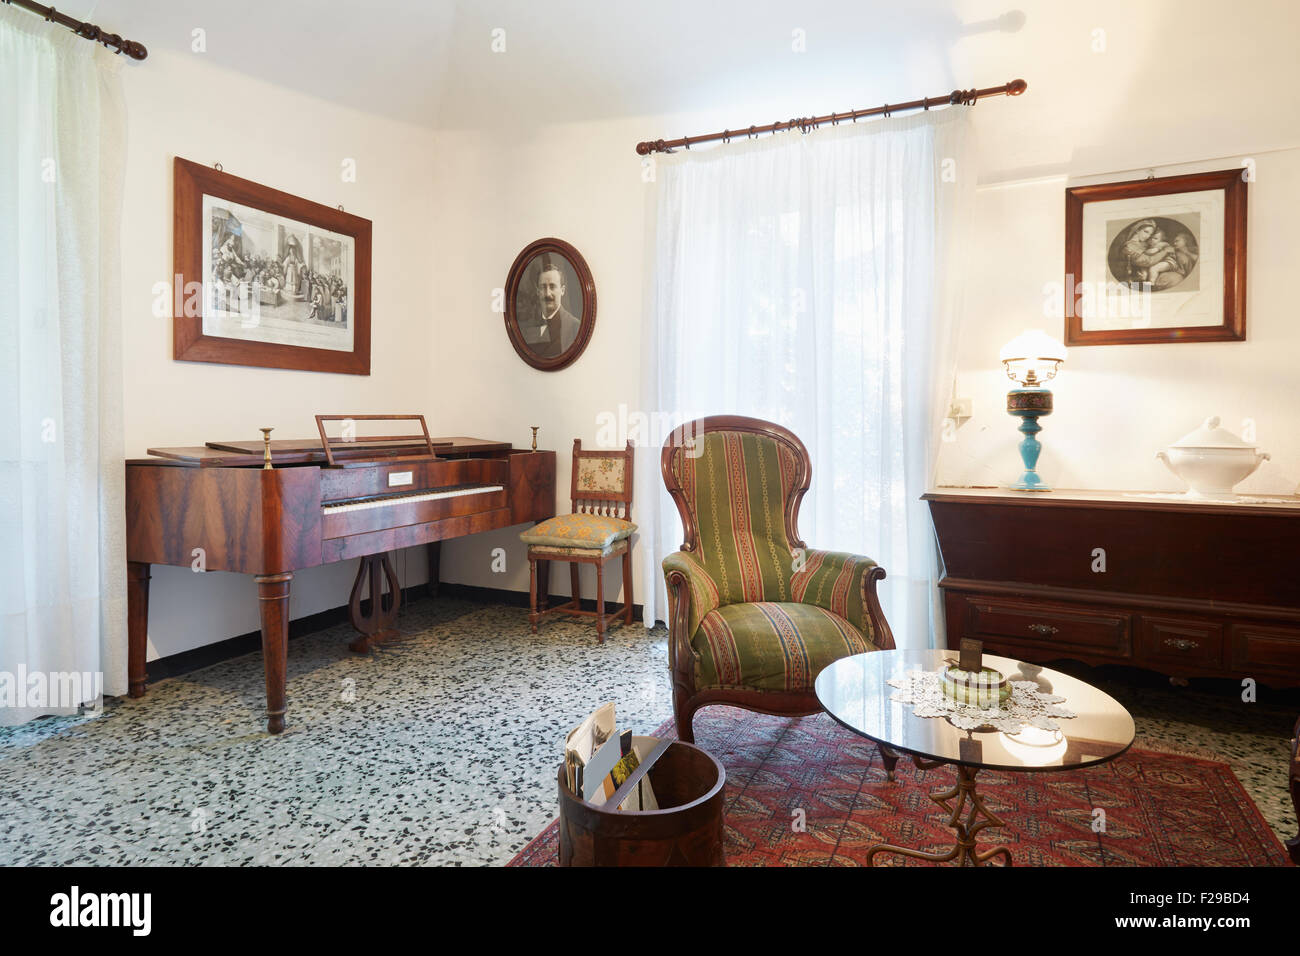 Wohnzimmer mit Antiquitäten, altes Land-Haus-Interieur Stockfoto